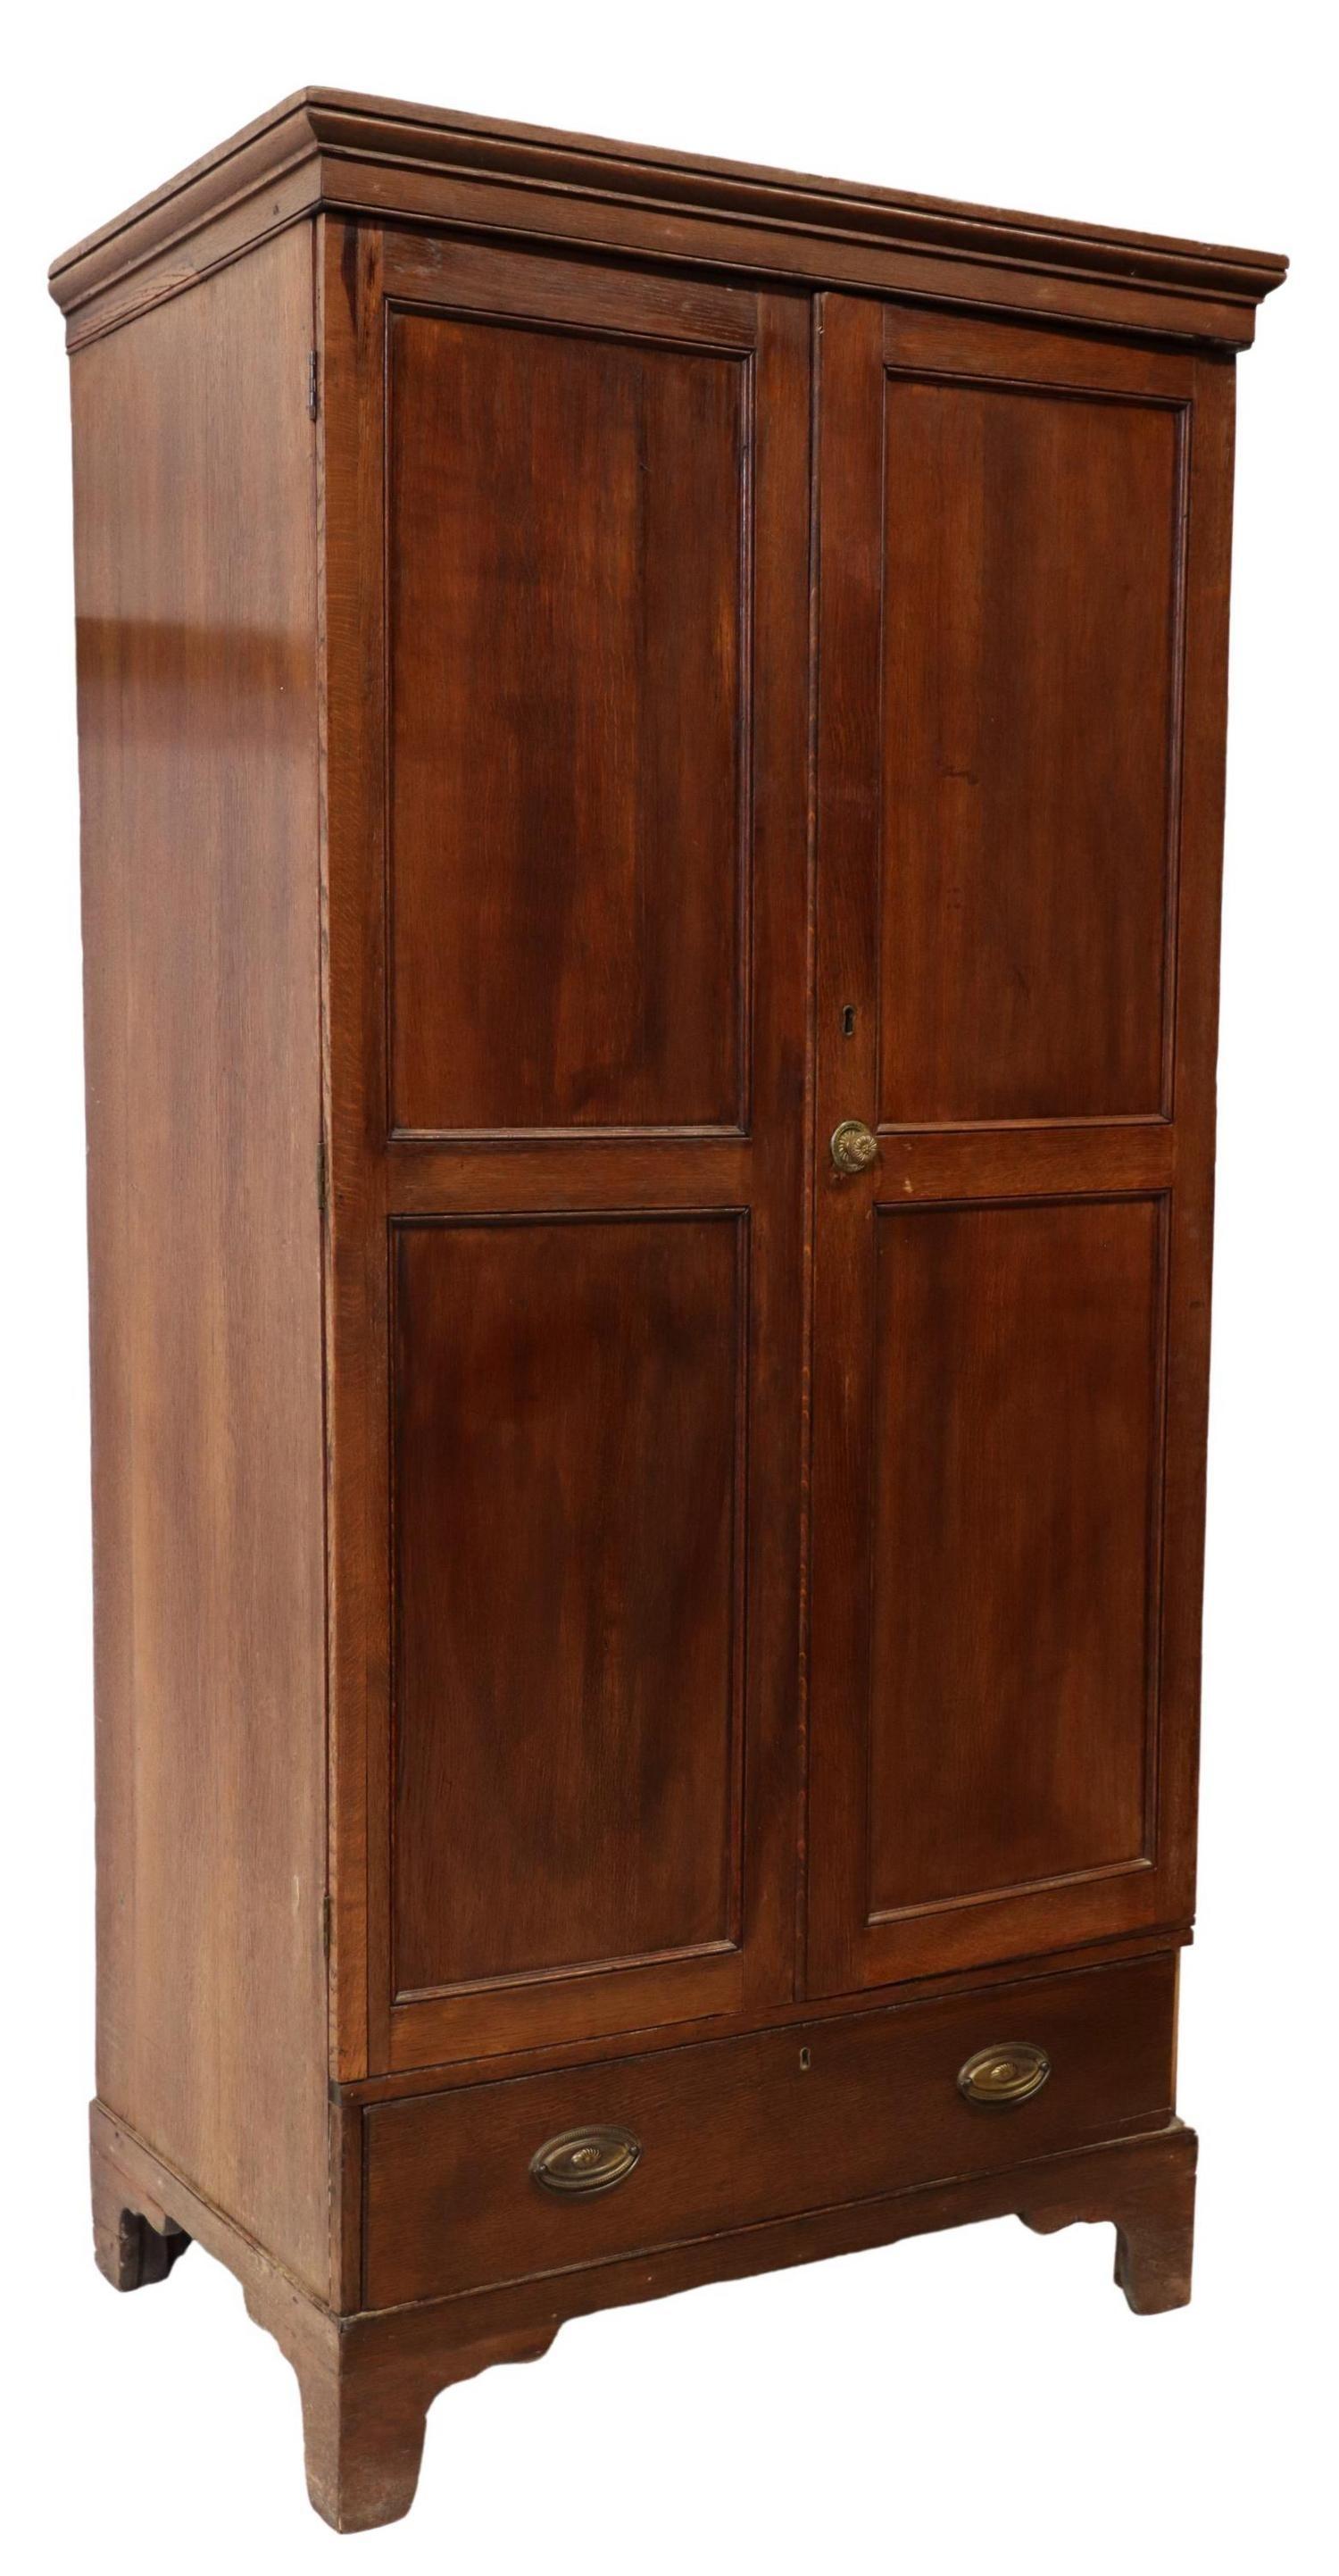 Ancienne armoire anglaise en chêne de style géorgien, 18e/ 19e C., corniche moulurée, deux portes à panneaux, tiroir extérieur inférieur, sur pieds en consoles, perte de garniture sur le côté droit du tiroir.

Dimensions :
Environ 76,5 